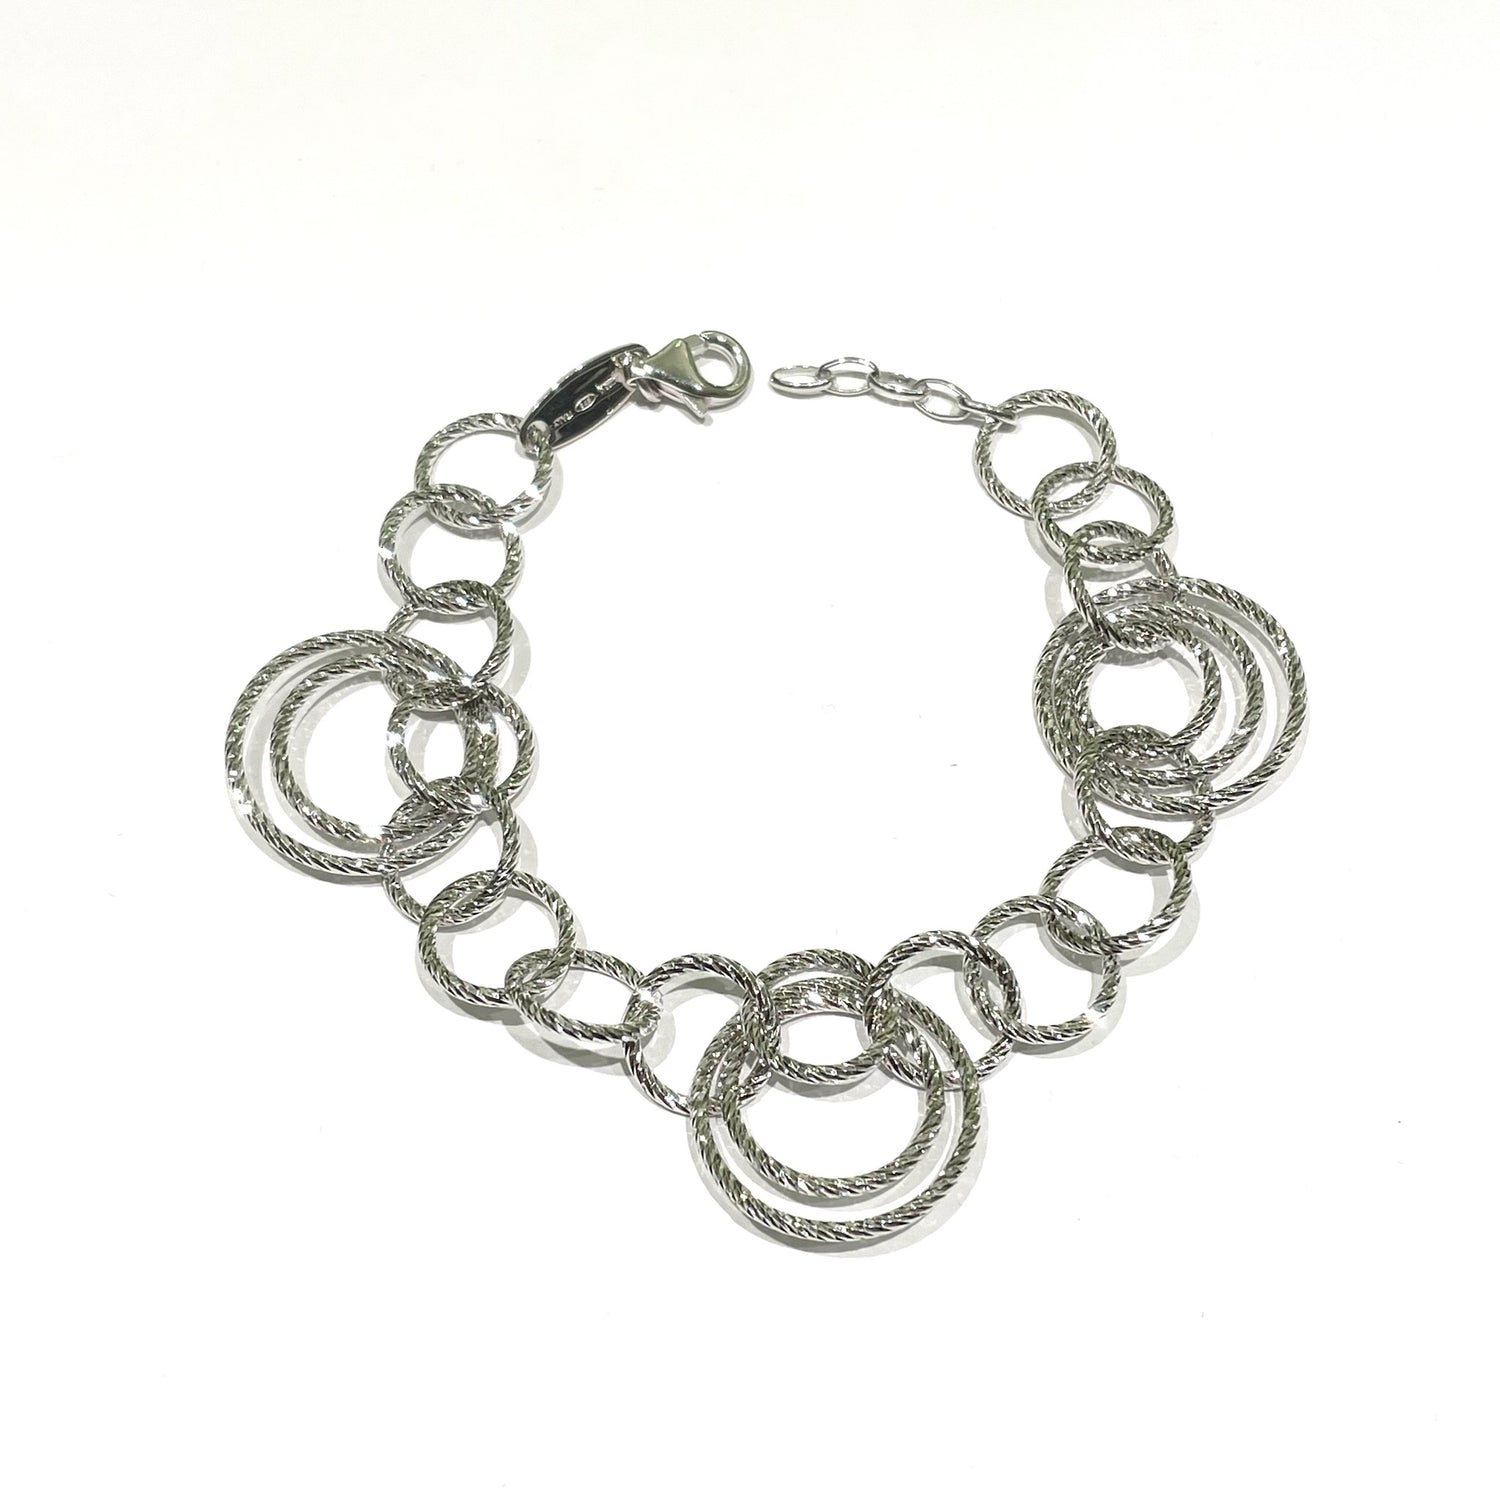 Bracciale in argento con anelli satinati.

Lunghezza 19 cm regolabile fino a 21 cm.

Dimensione anello più grande 2 cm.

Dimensione anello più piccolo 1 cm.